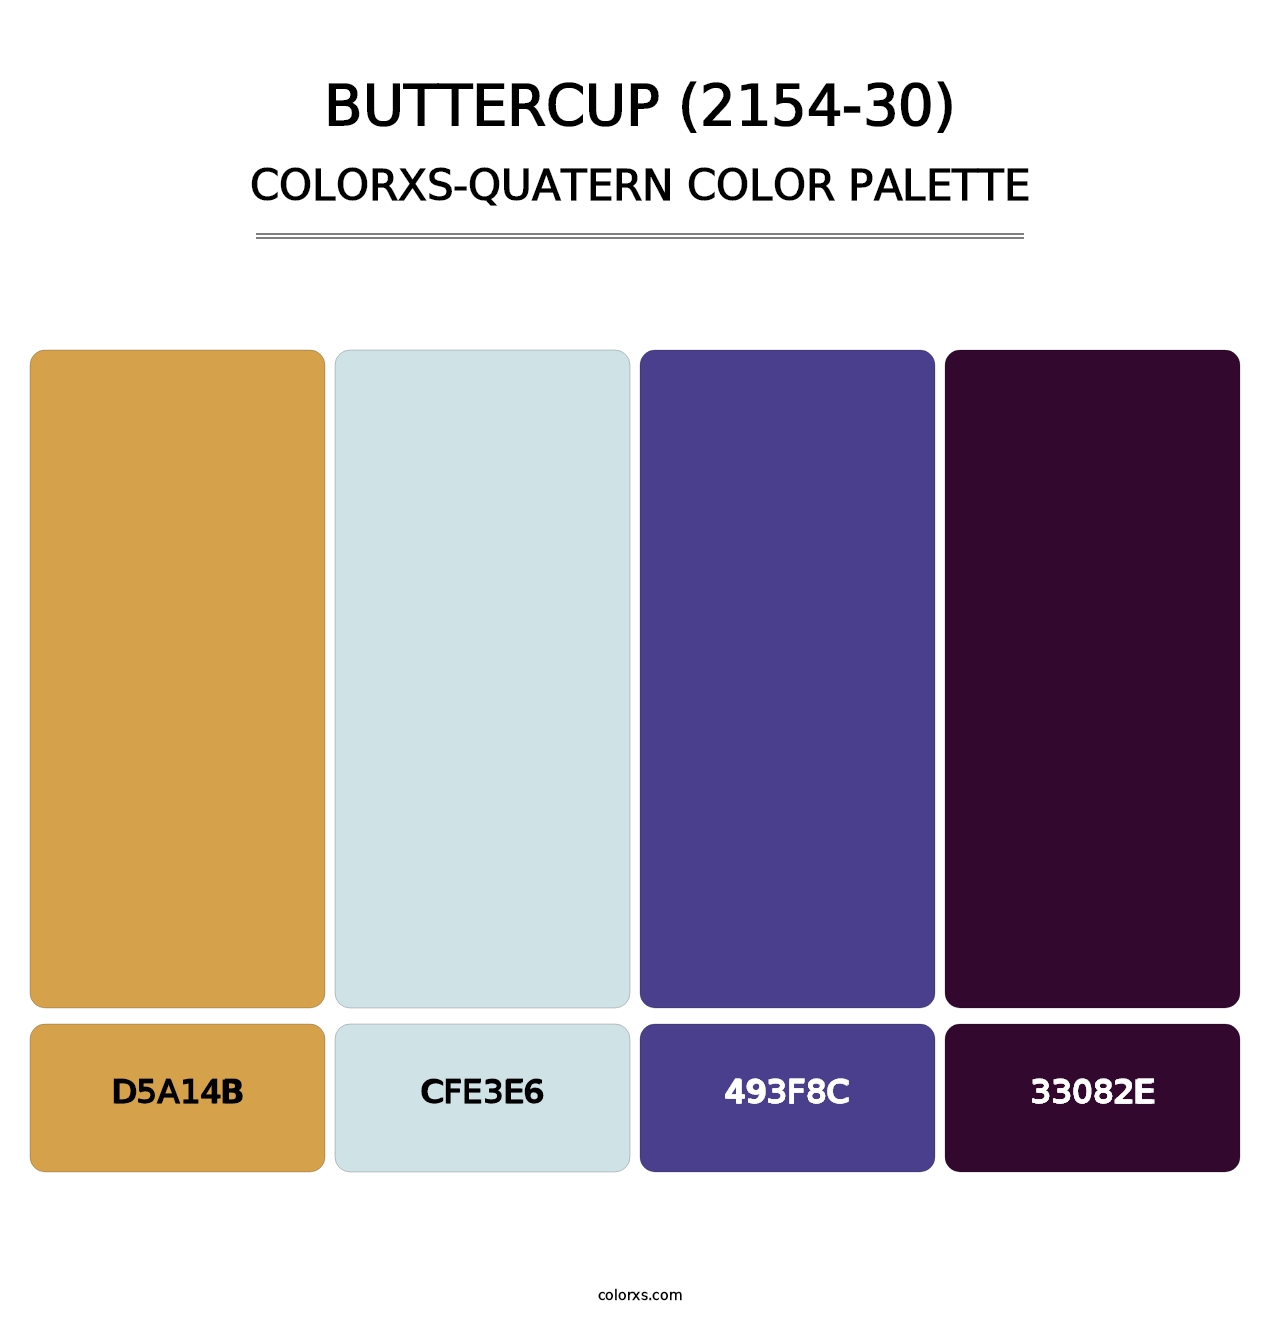 Buttercup (2154-30) - Colorxs Quatern Palette